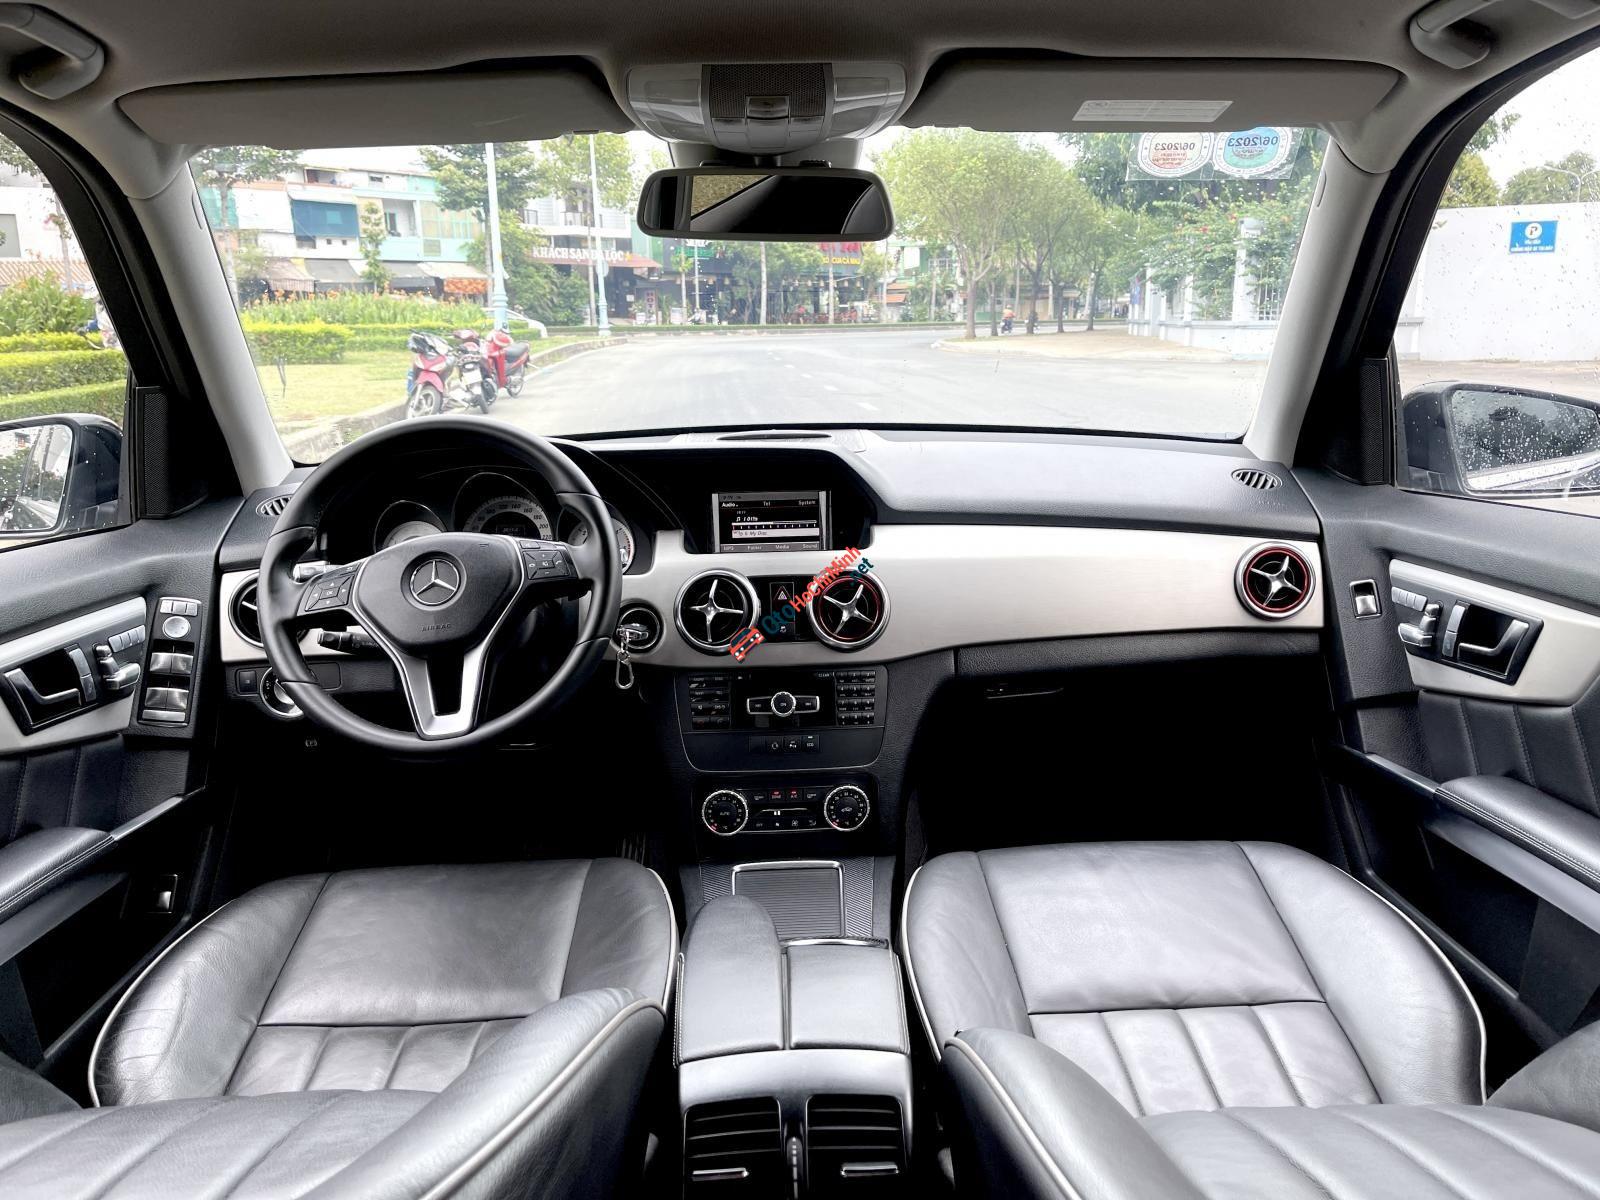 SUV Siêu Hot MercedesAMG G63 Thêm Bản Gầm Cao Với Khả Năng Lội Nước Ấn  Tượng  Otohoangkimcom